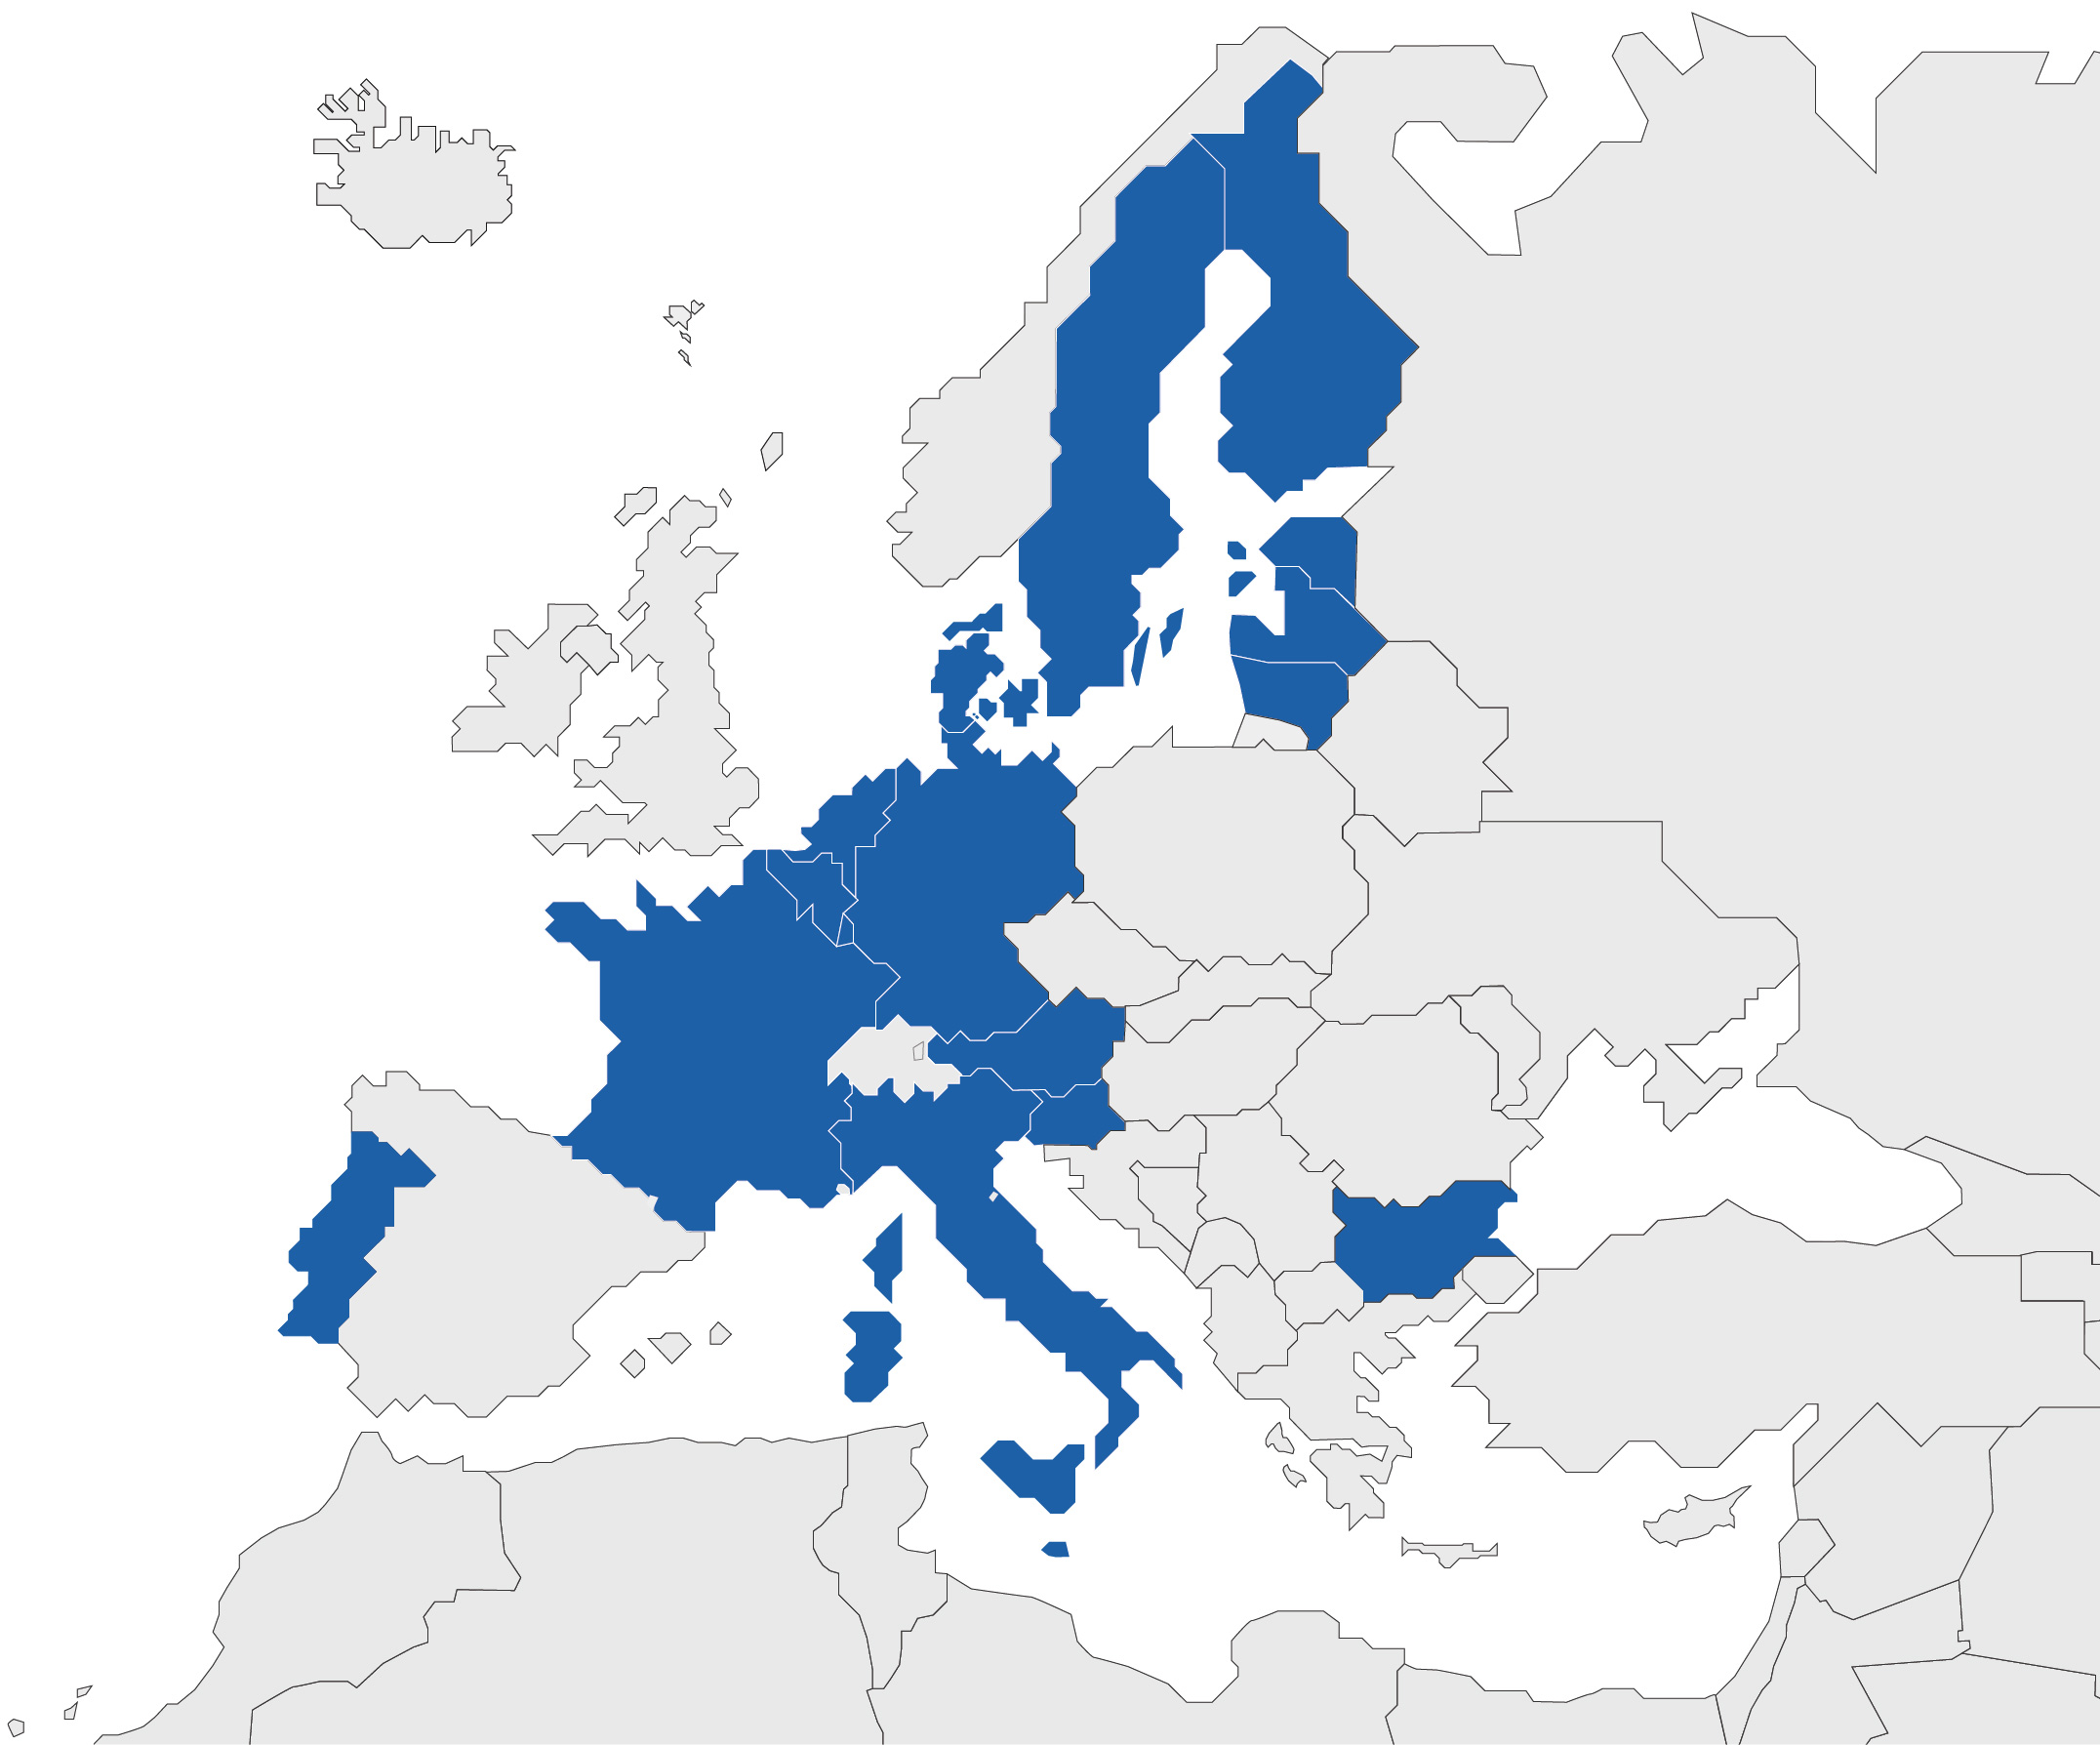 États actuels participant au brevet unitaire (17) - Source EPO.org